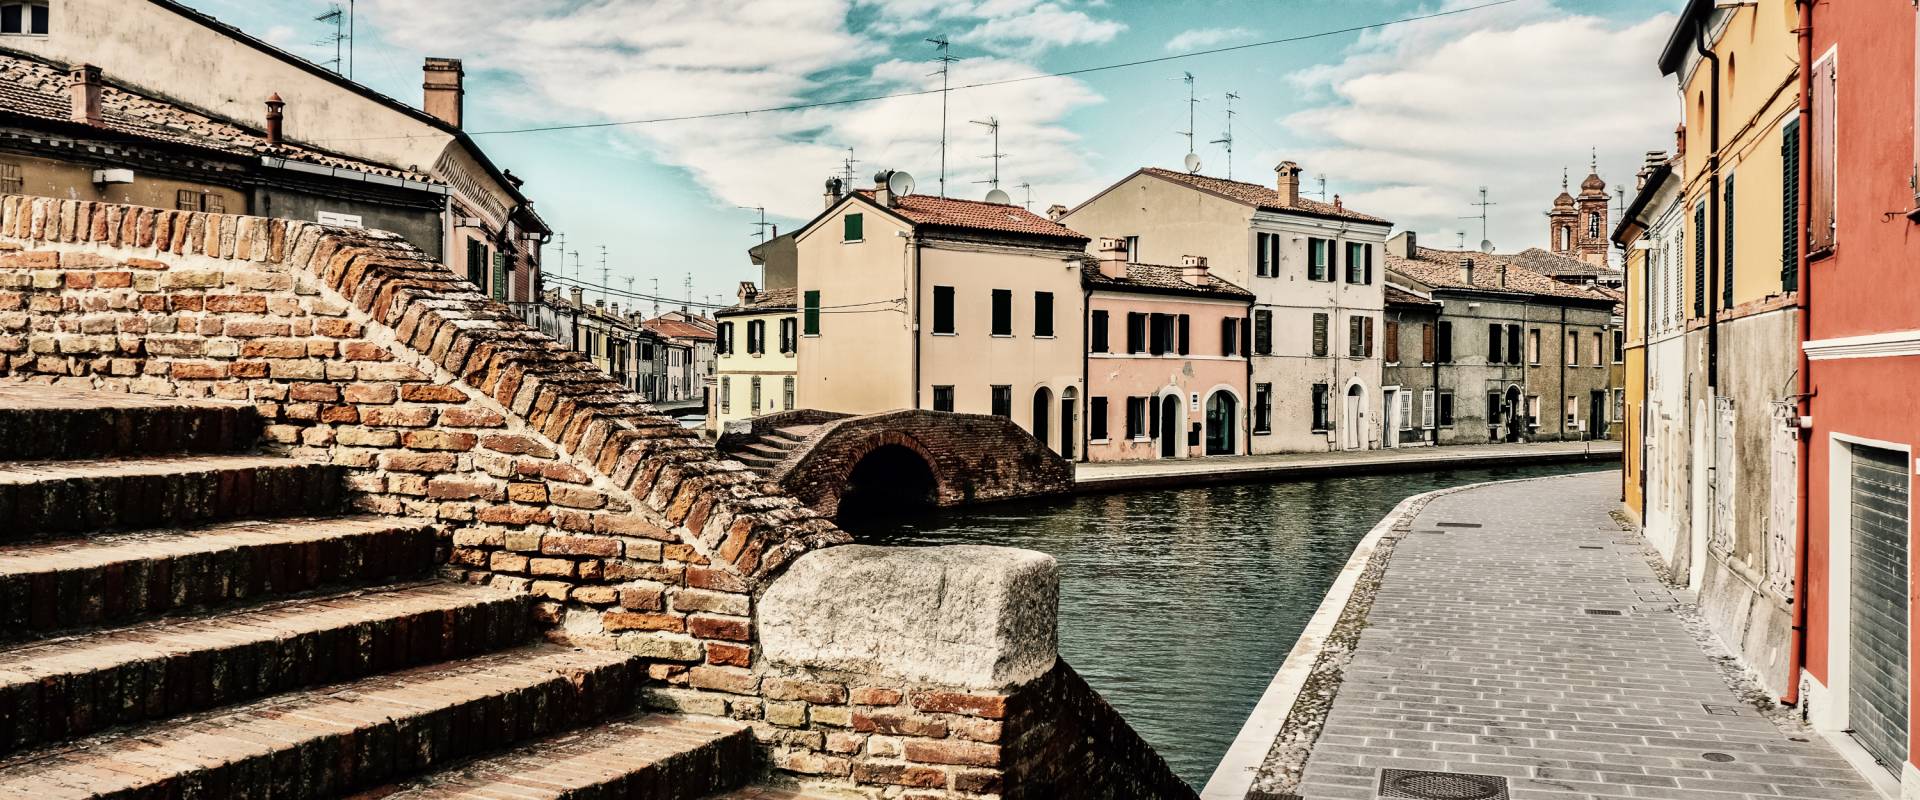 -- Centro storico con i suoi ponti - Comacchio -- foto di Vanni Lazzari